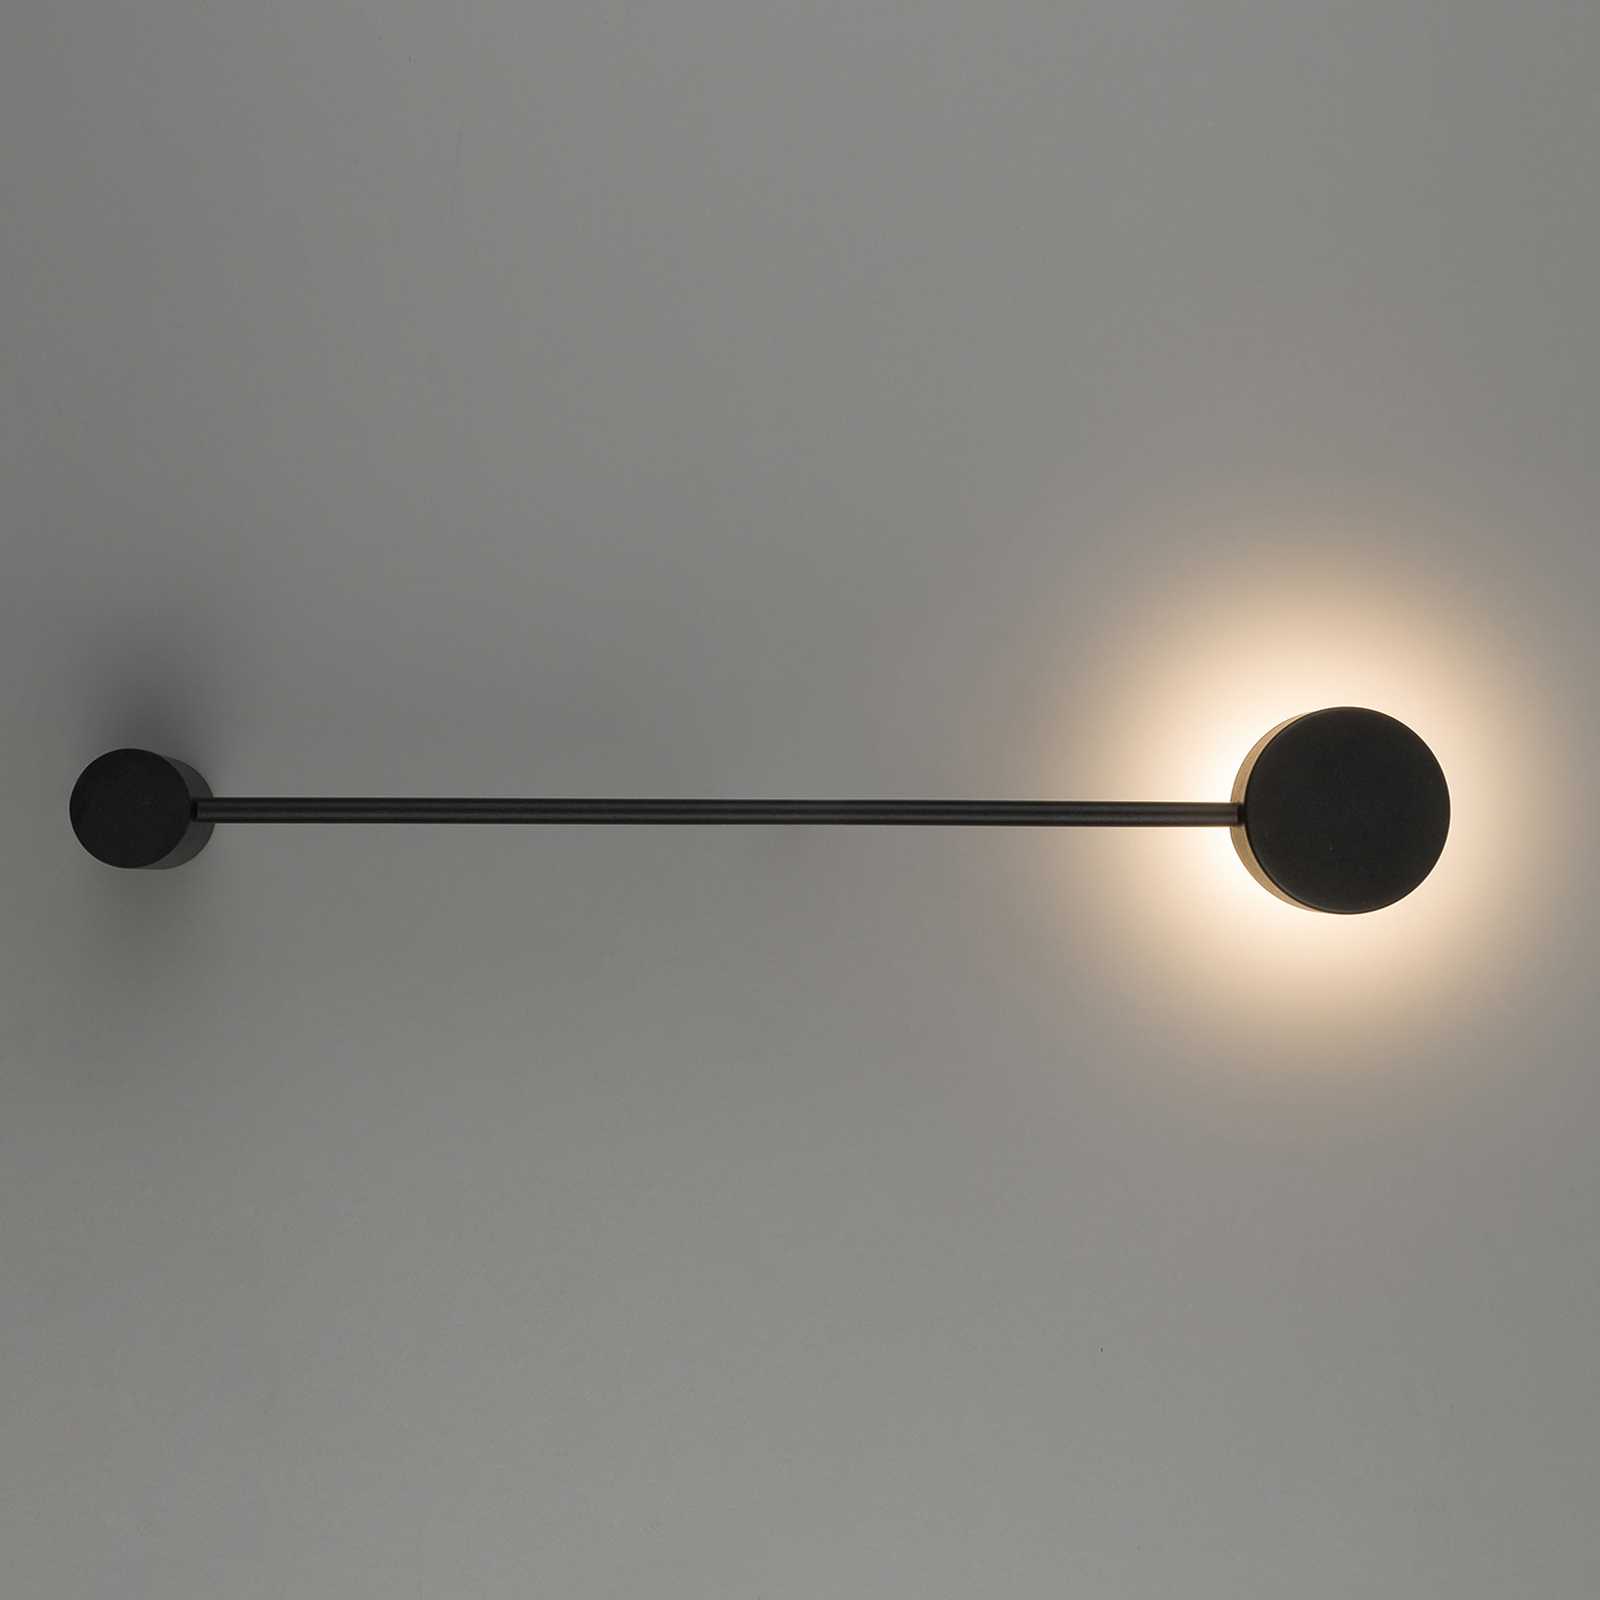 Sieninis šviestuvas "Orbit I 40", juodas, vienos liepsnos